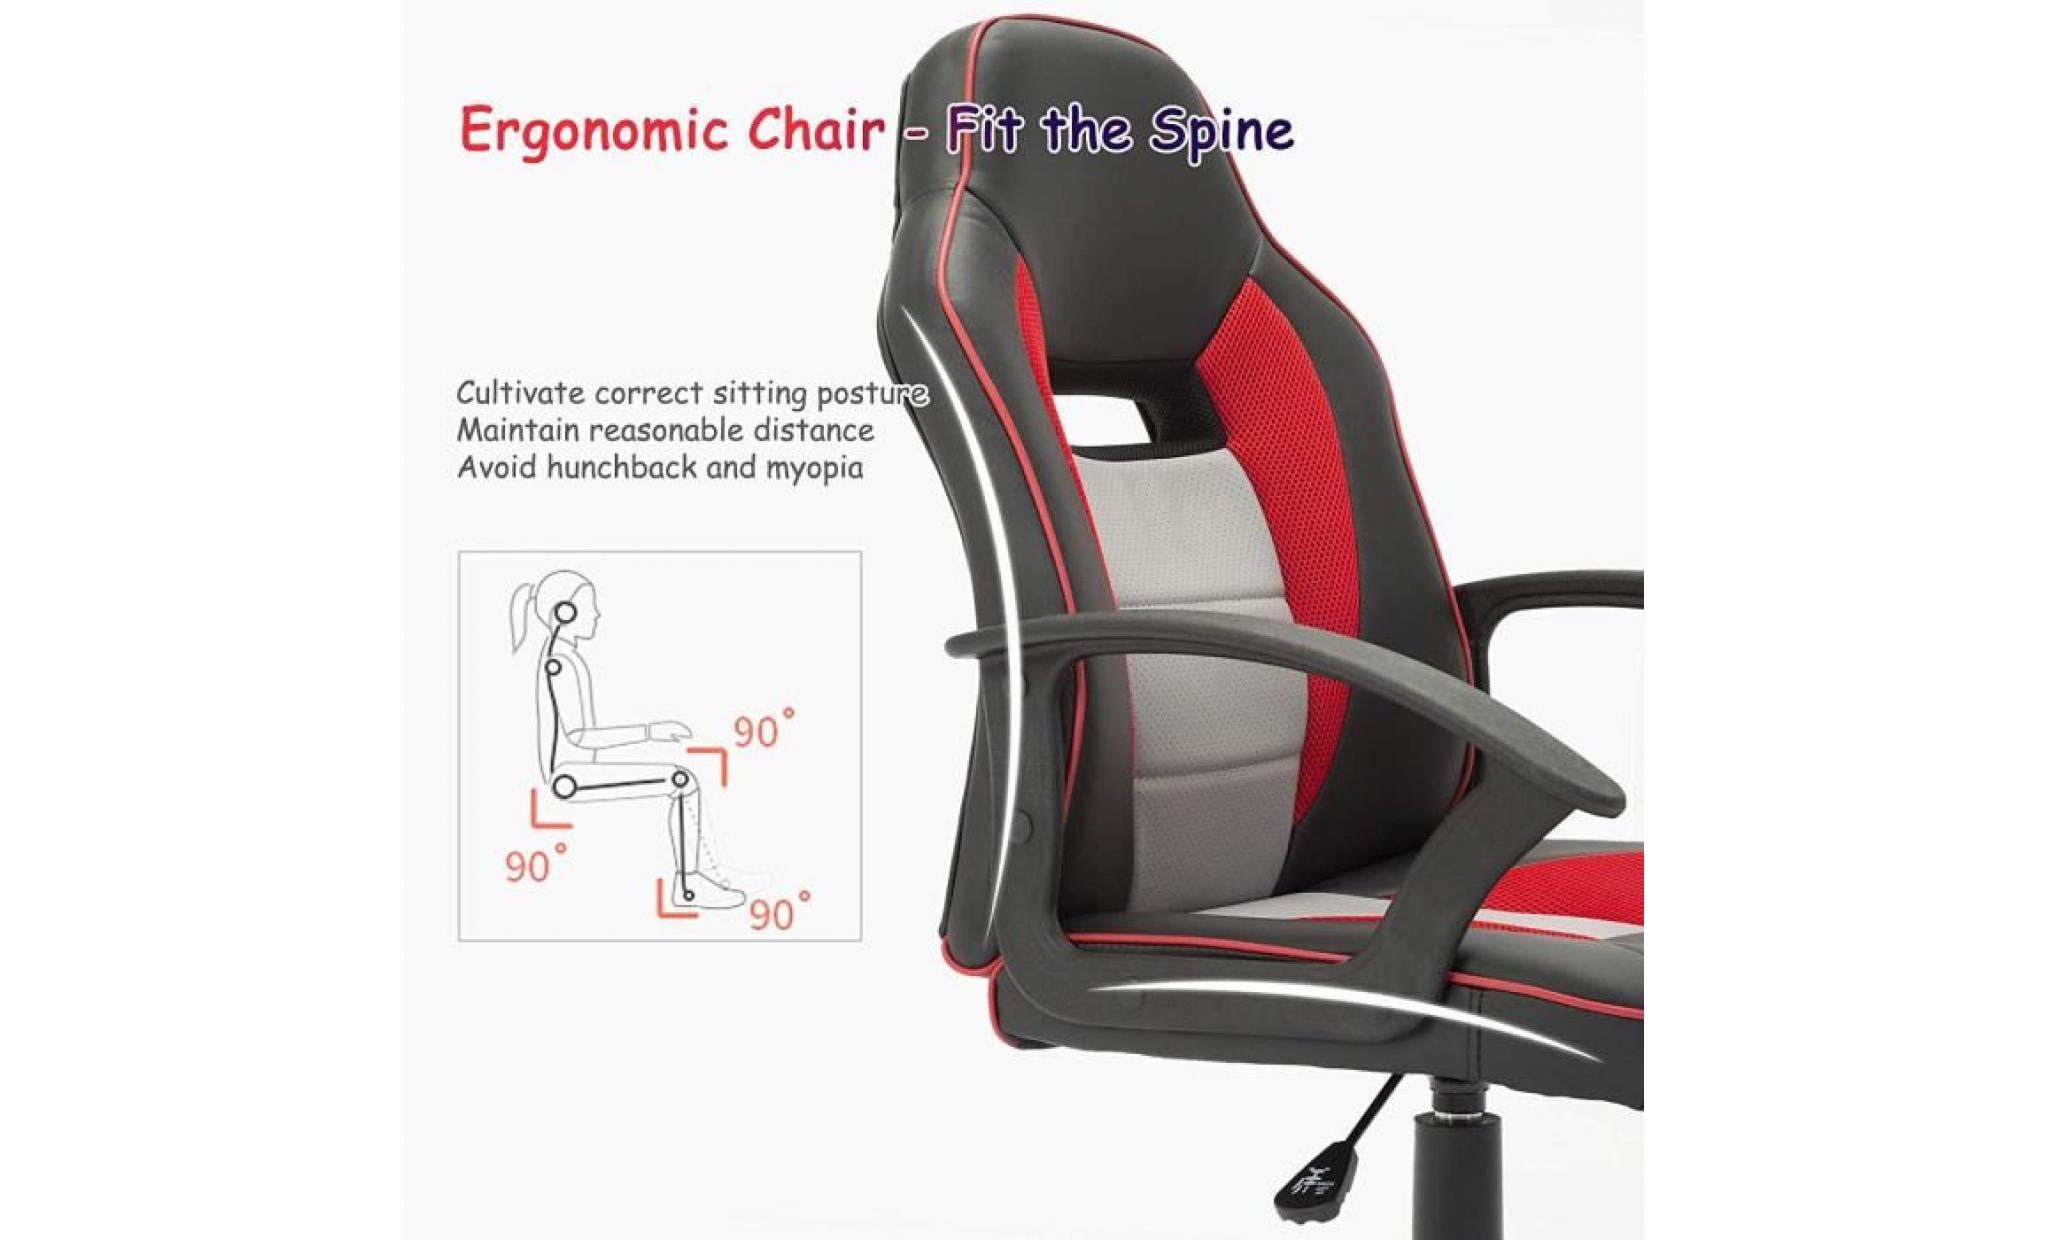 chaise de bureau pour Étudiant enfant en similicuir siège ergonomique hauteur réglable   rouge   intimate wm heart pas cher